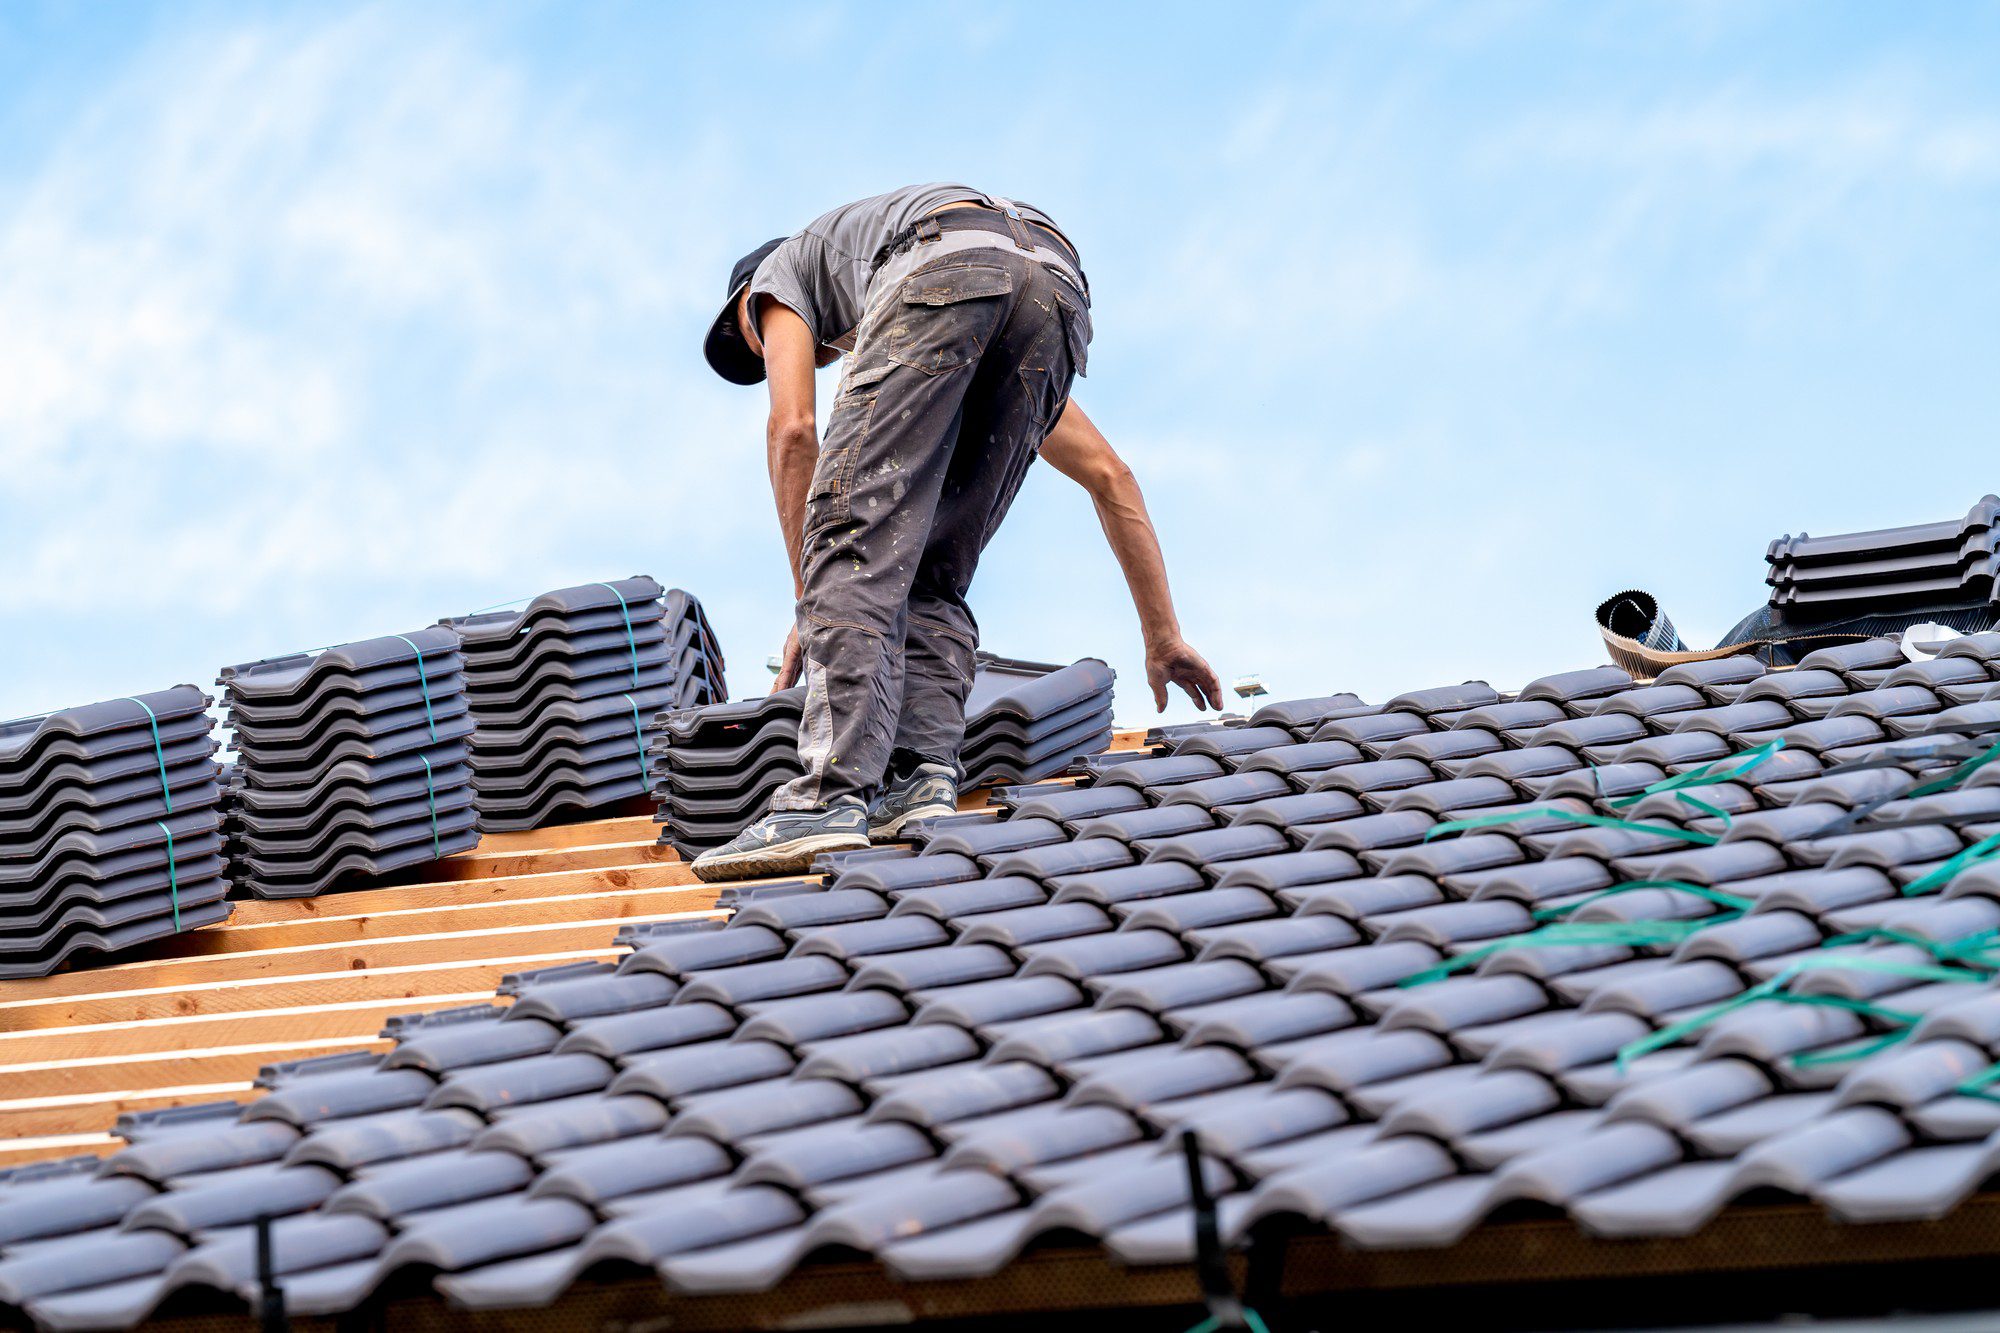 New Bungalow Roof Craftsman Installs Ceramic Tile 2023 09 14 16 01 26 Utc